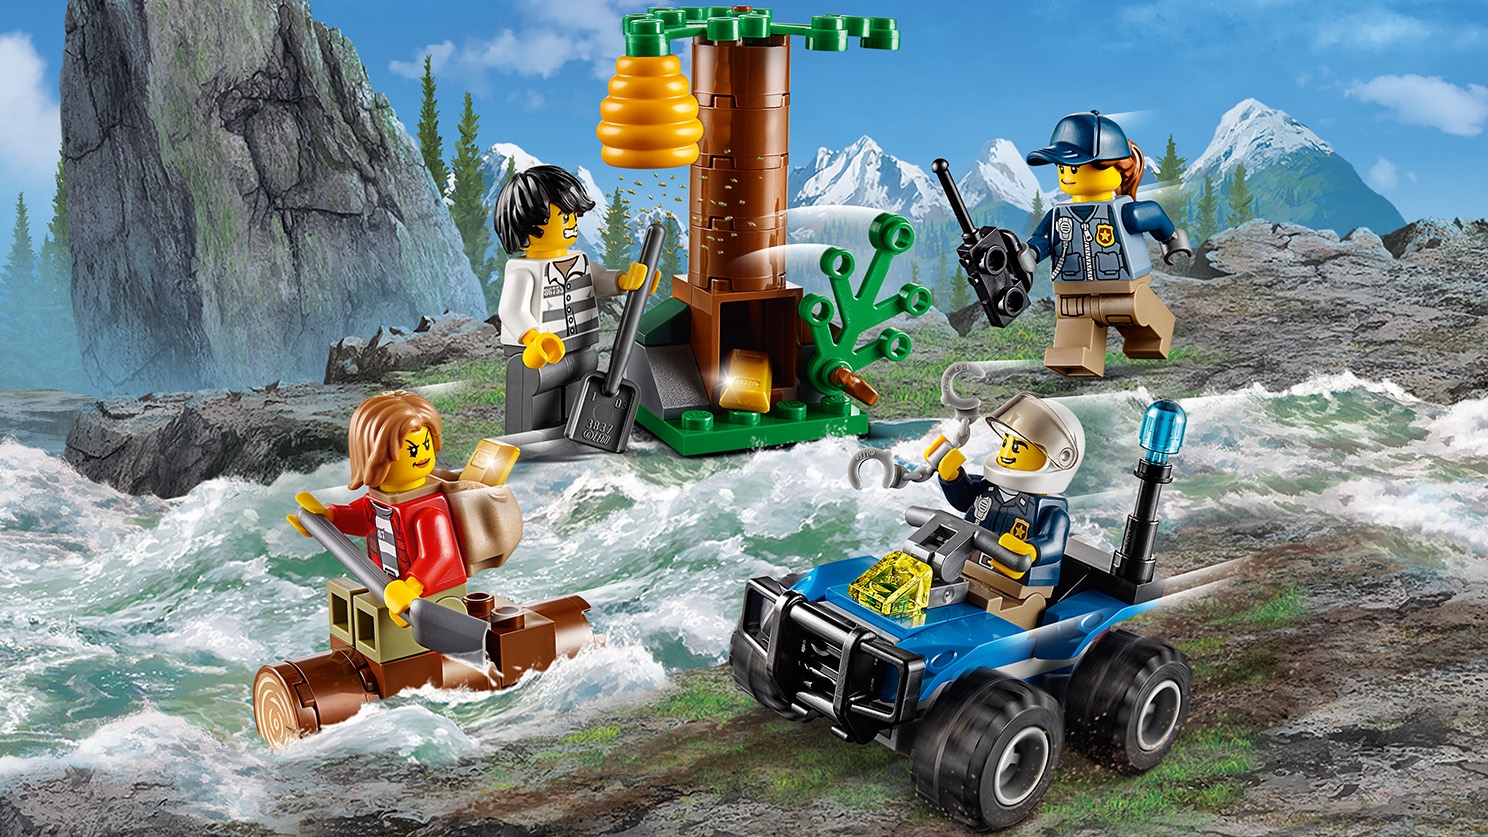 LEGO City Mountain Fugitives  60171